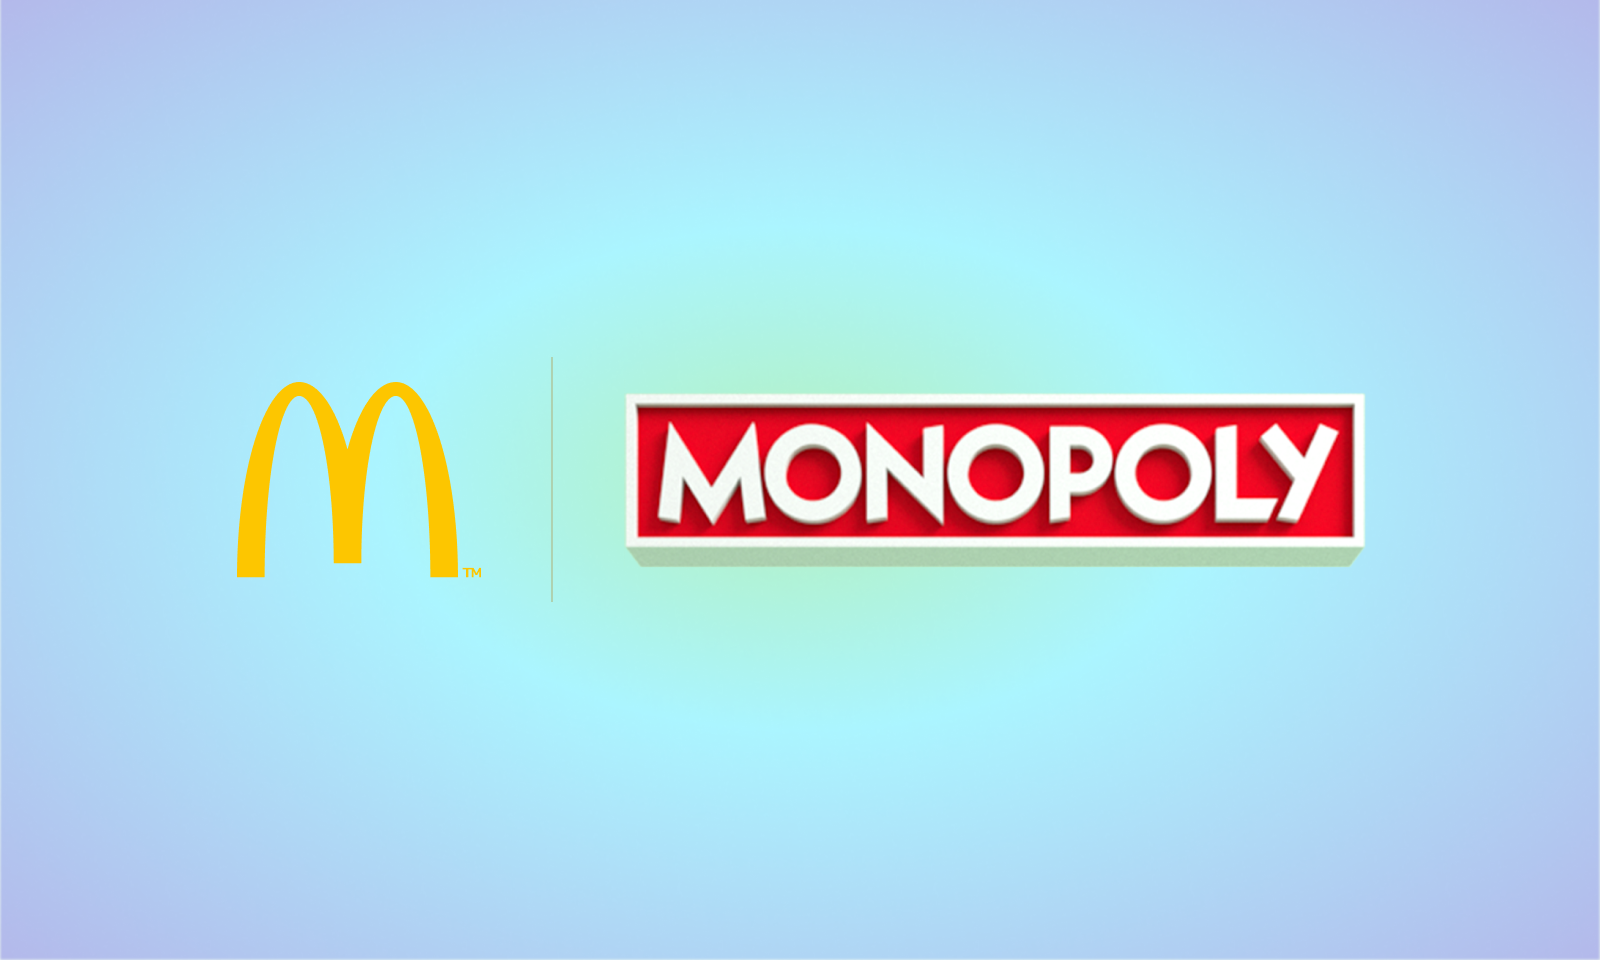 McDonalds monopoly